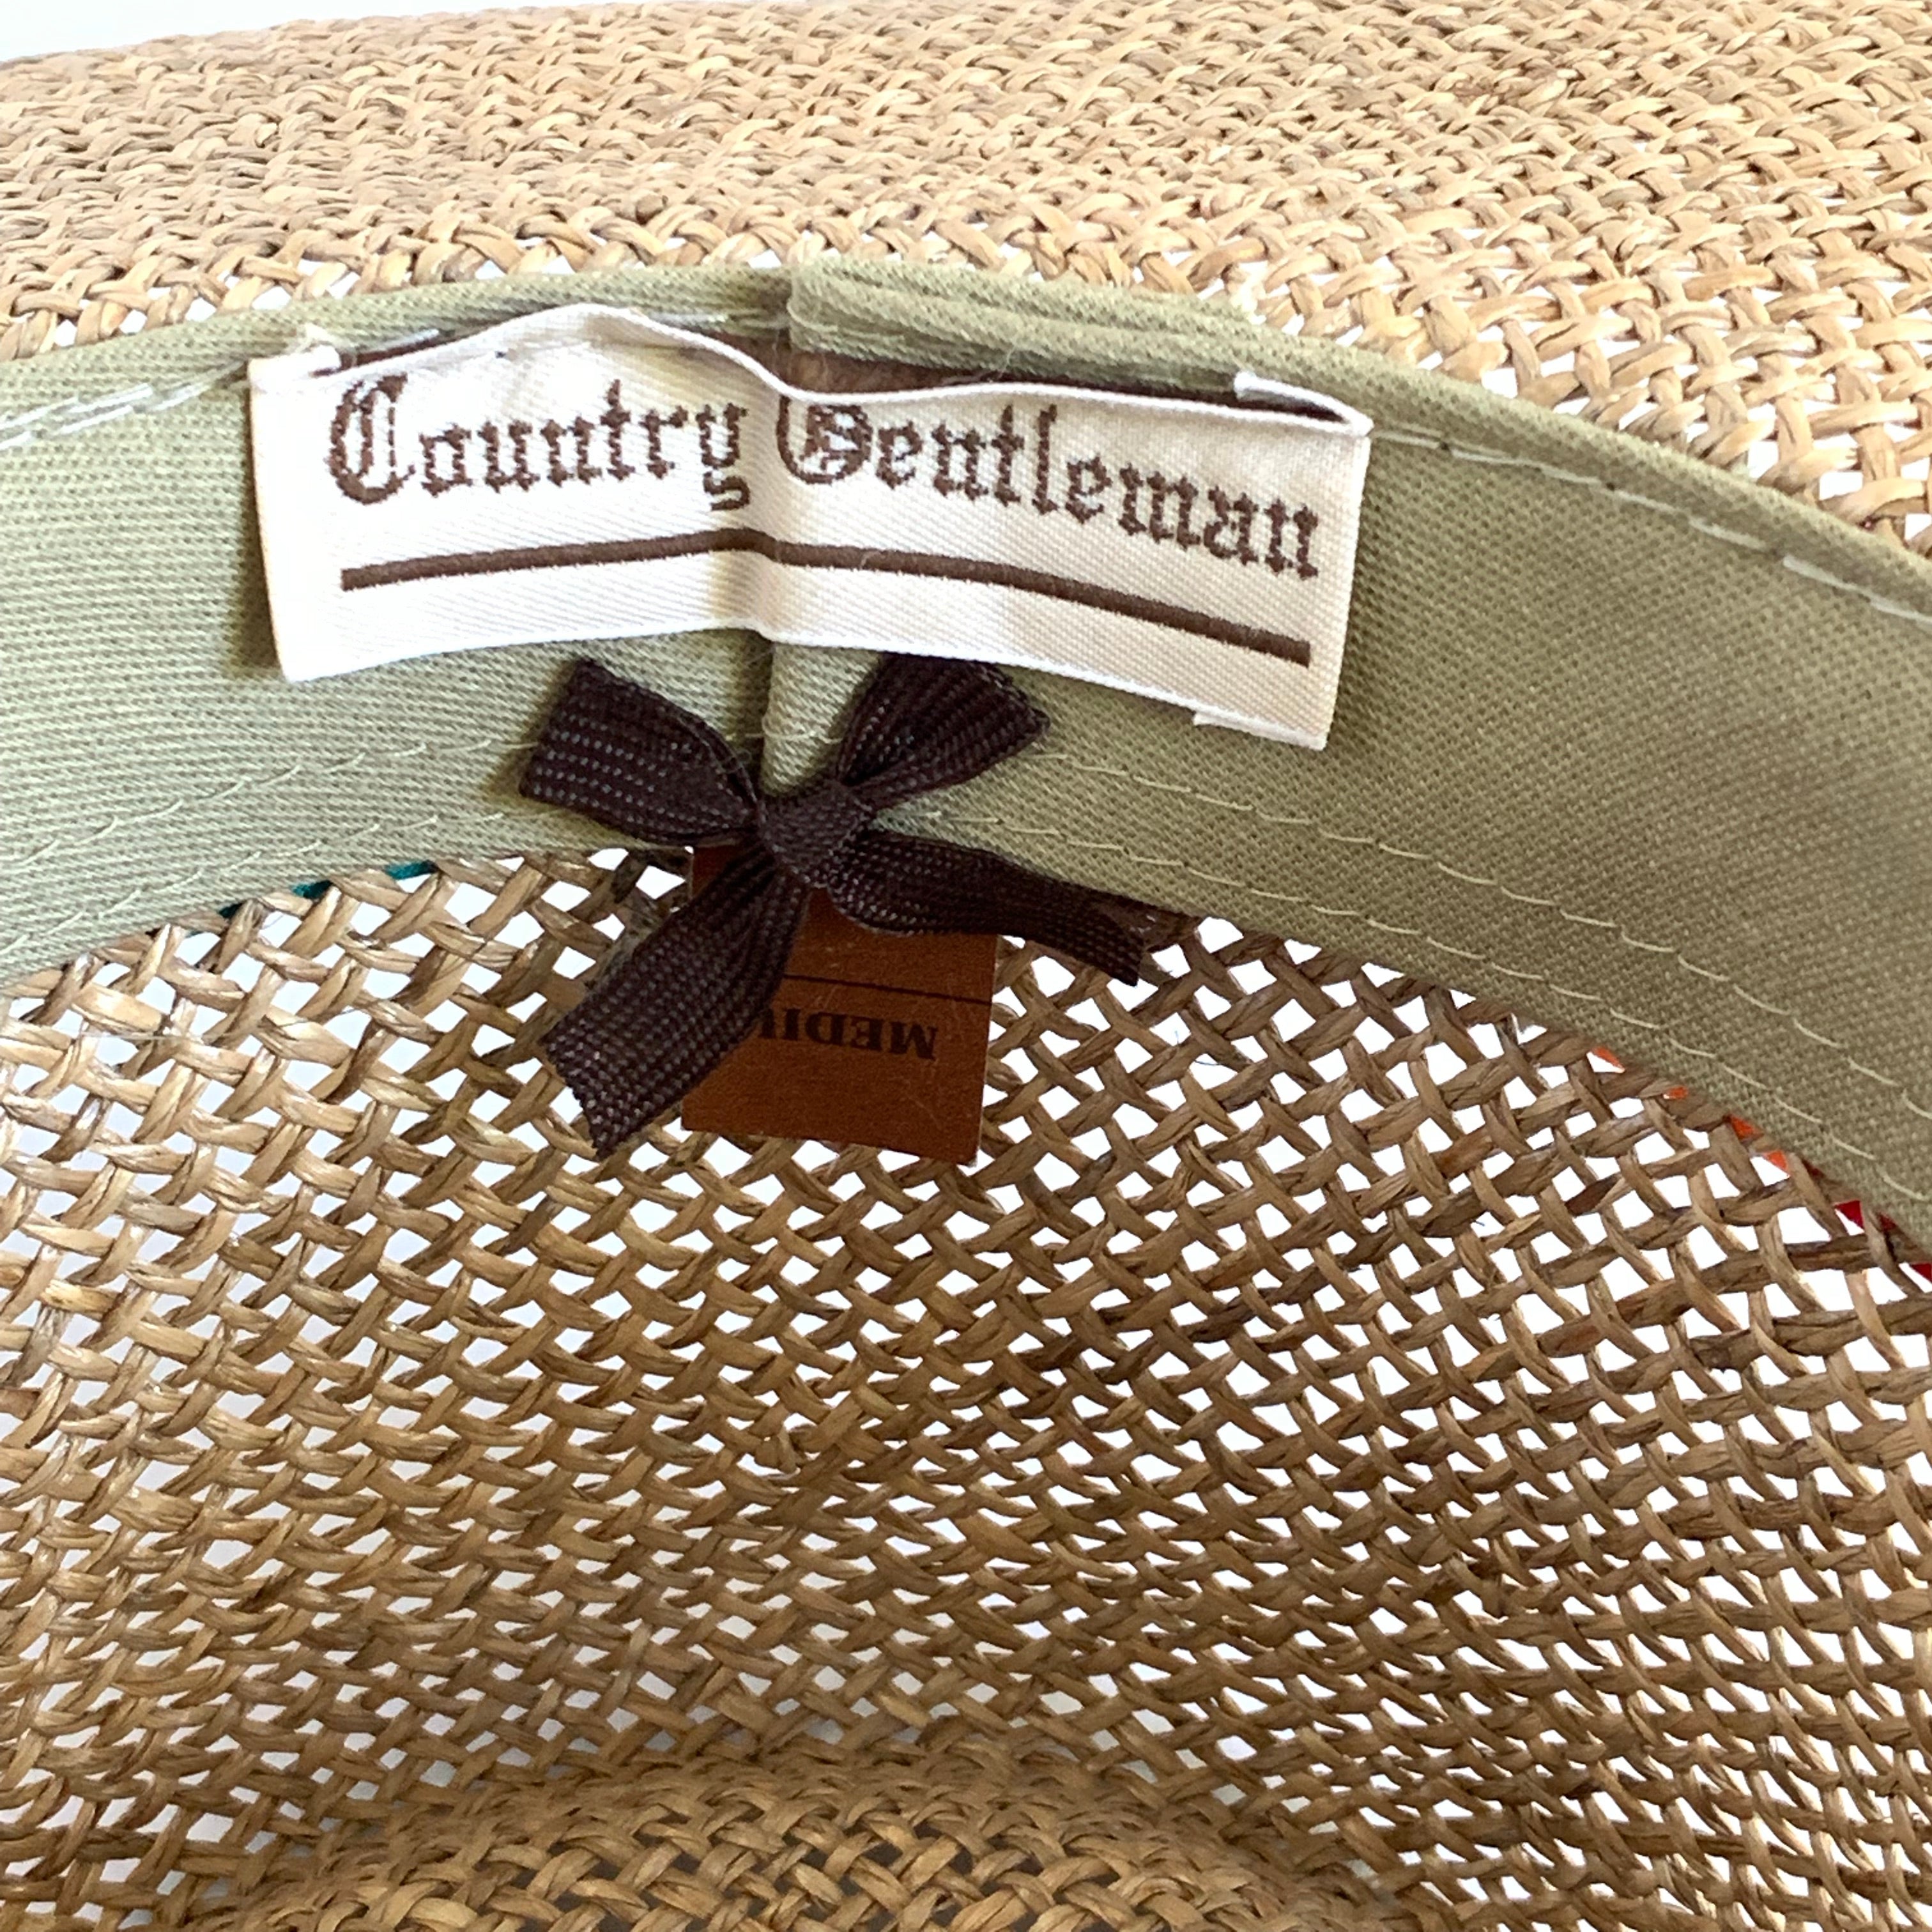 Hawaiian Straw Hat